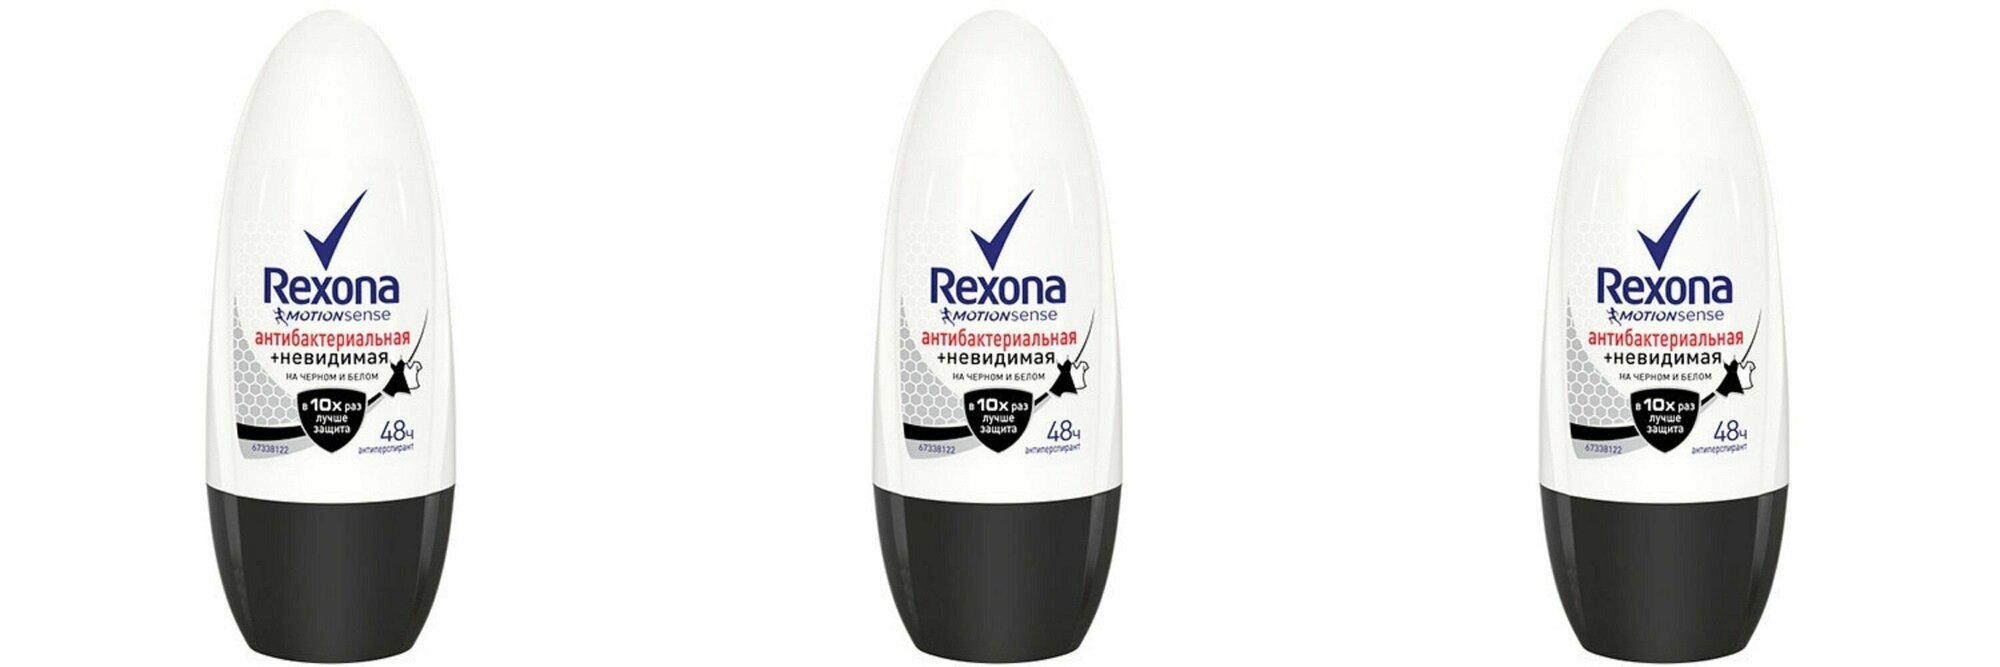 REXONA Део-шарик Антибактериальный и Невидимый на чёрном и белом 50мл ,3шт.